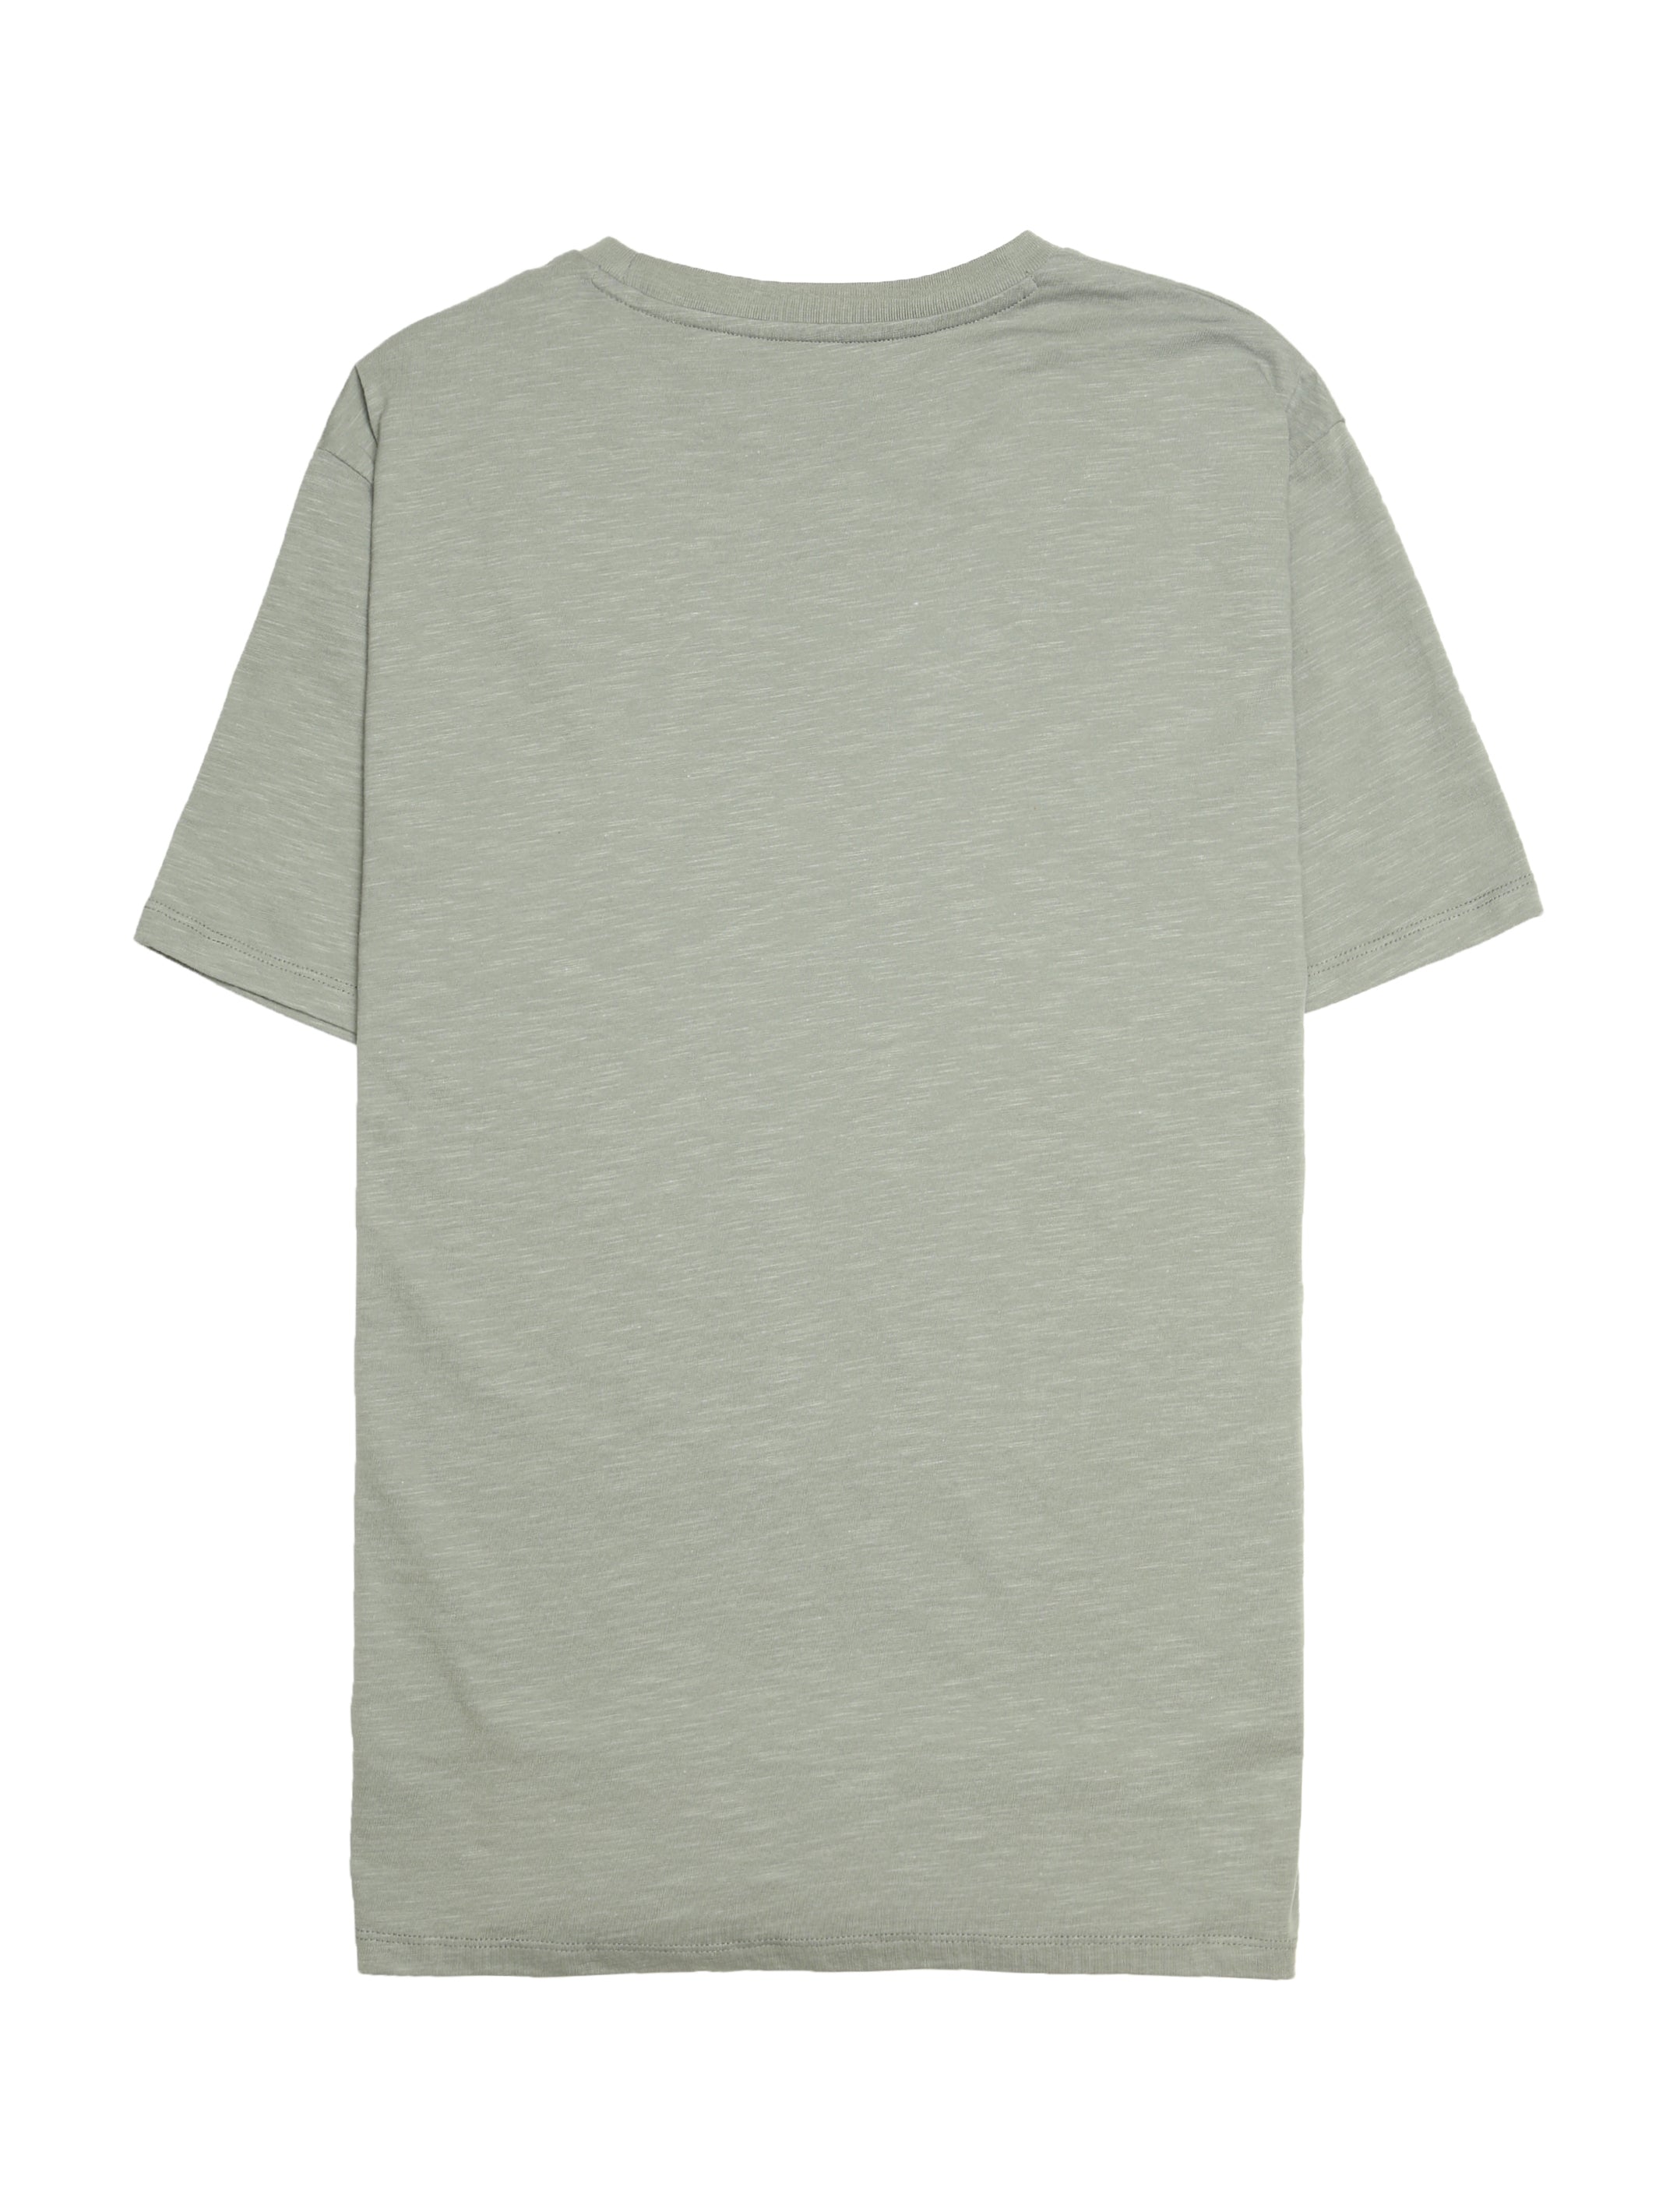 Men's Brooklyn Pocket T-shirt - BROOKLYN INDUSTRIES